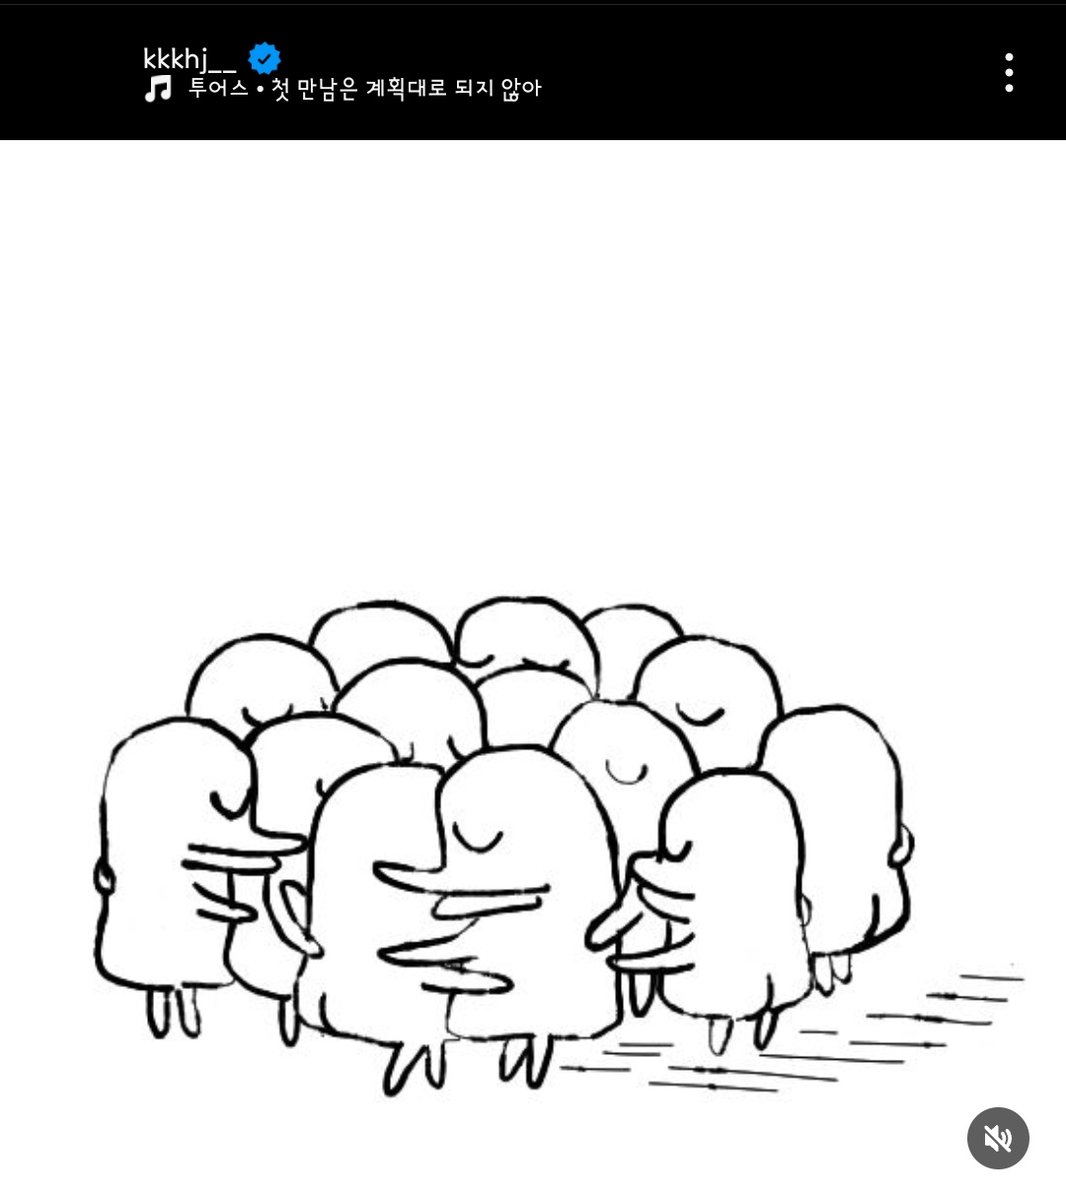 24.04.18
고호정 인스타그램

#고호정 #KOHOJUNG